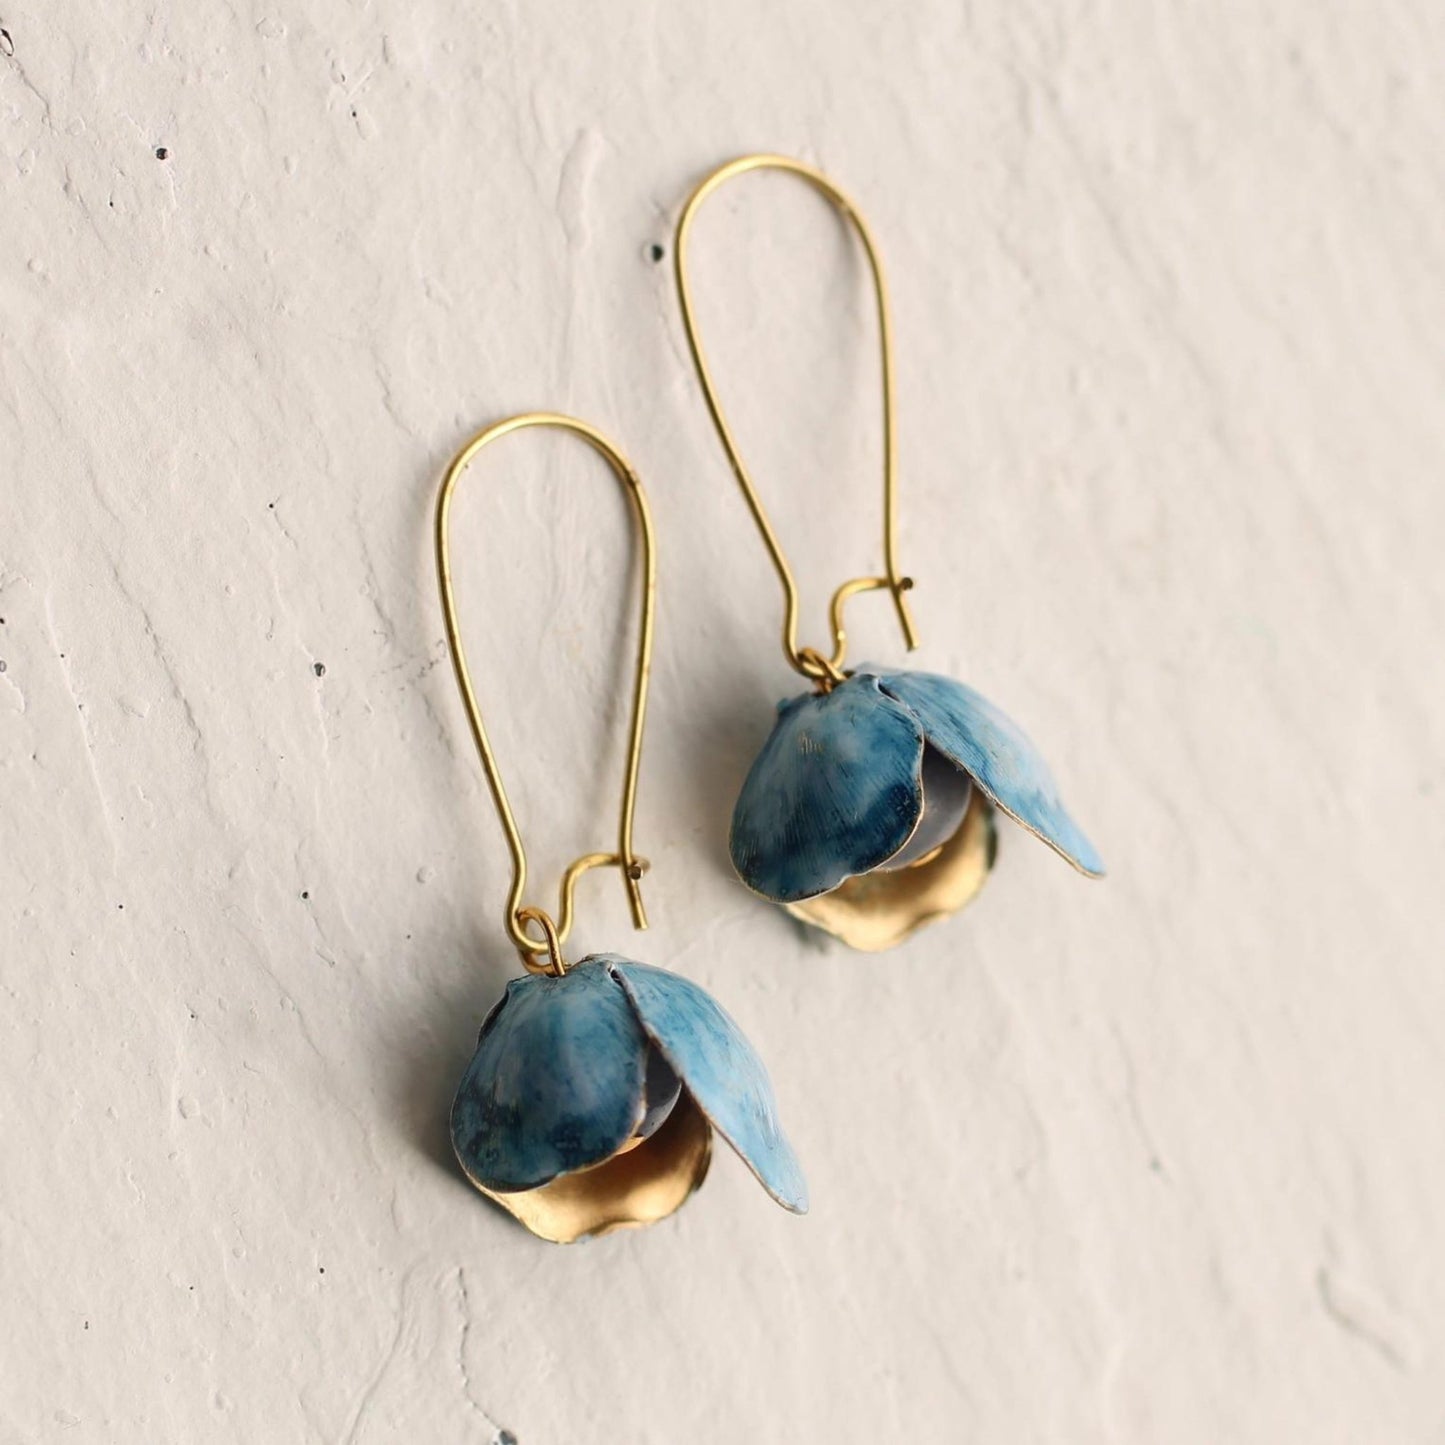 Bluebell Earrings - The Little Jewellery Company